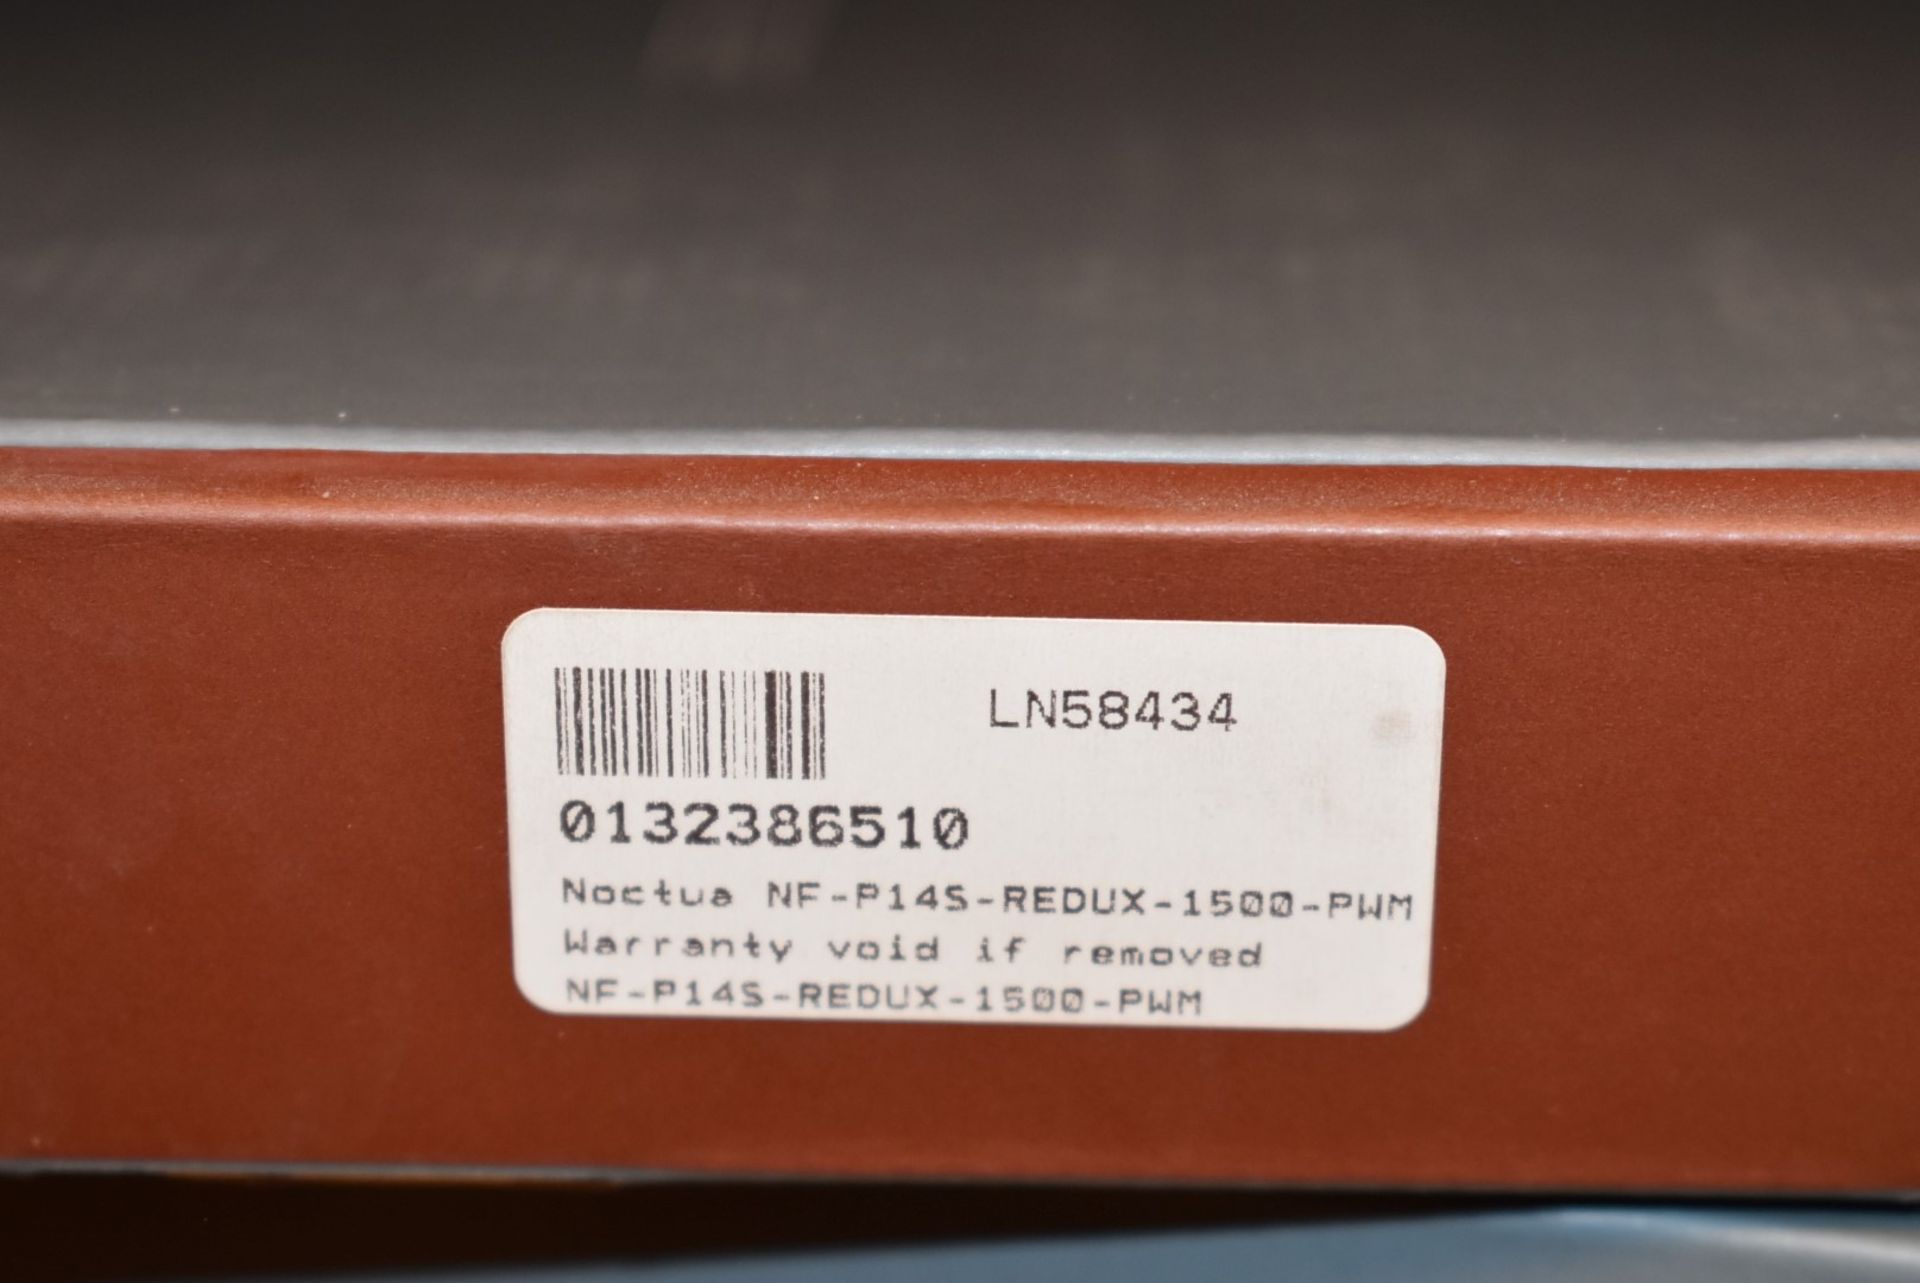 4 x Noctua 140mm NF-P14S-REDUX-1500-PWM Quiet PC Case Fans - New Boxed Stock - - Image 3 of 4